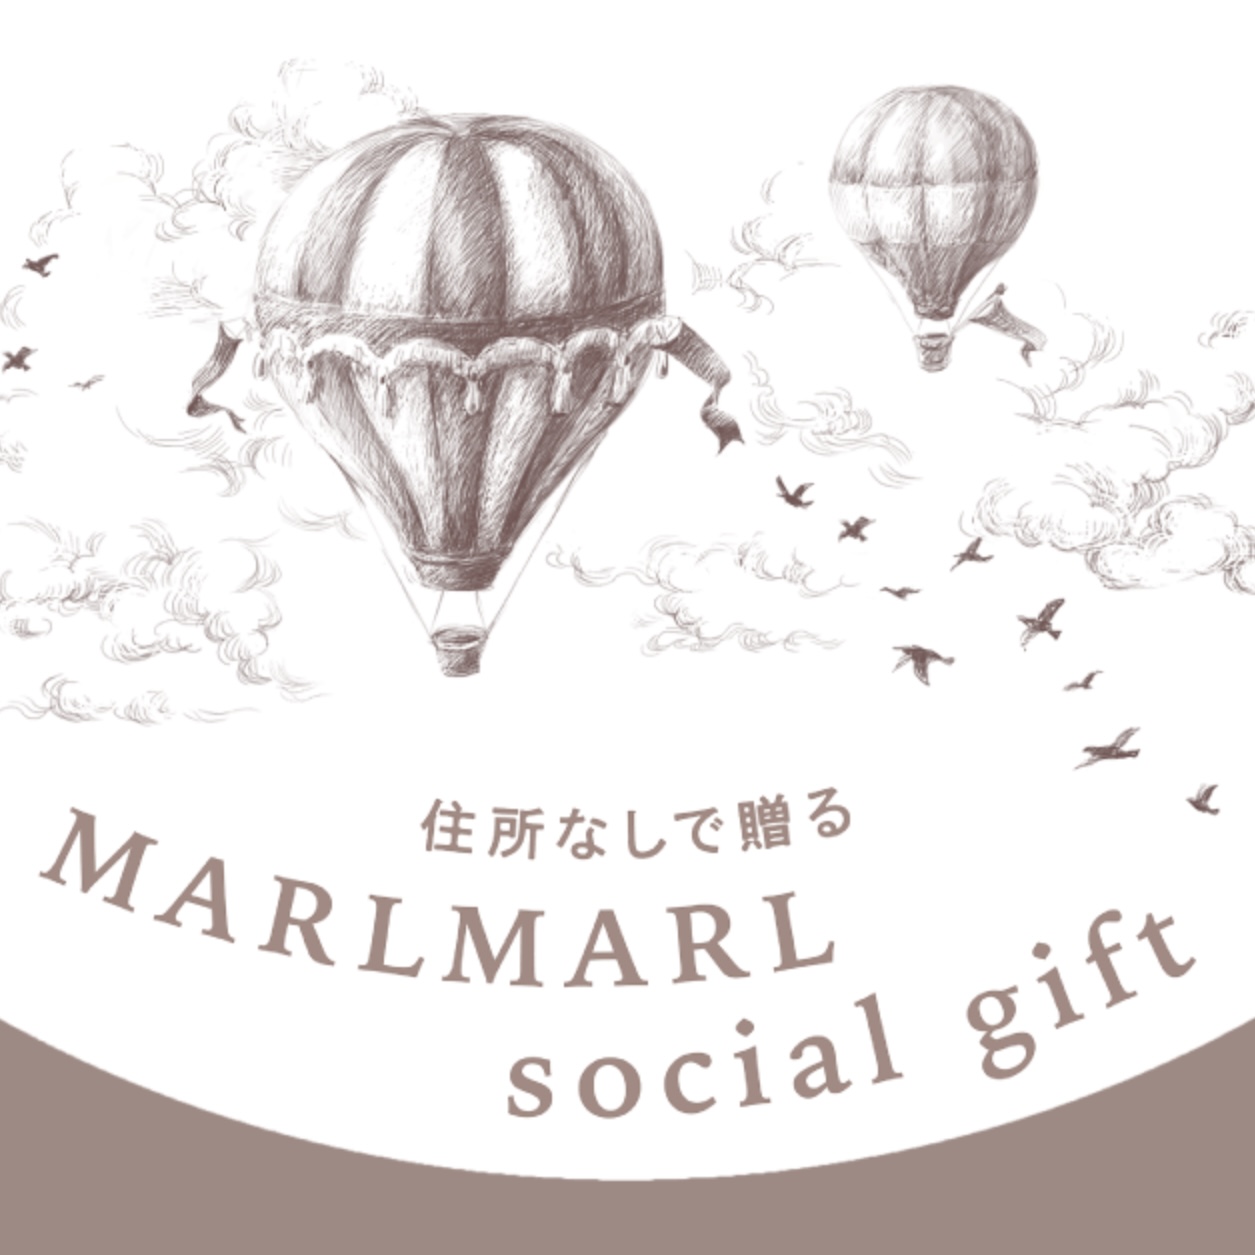 【新しい贈り方が登場】住所や本名を知らない相手にもギフトできる！MARLMARL social gift